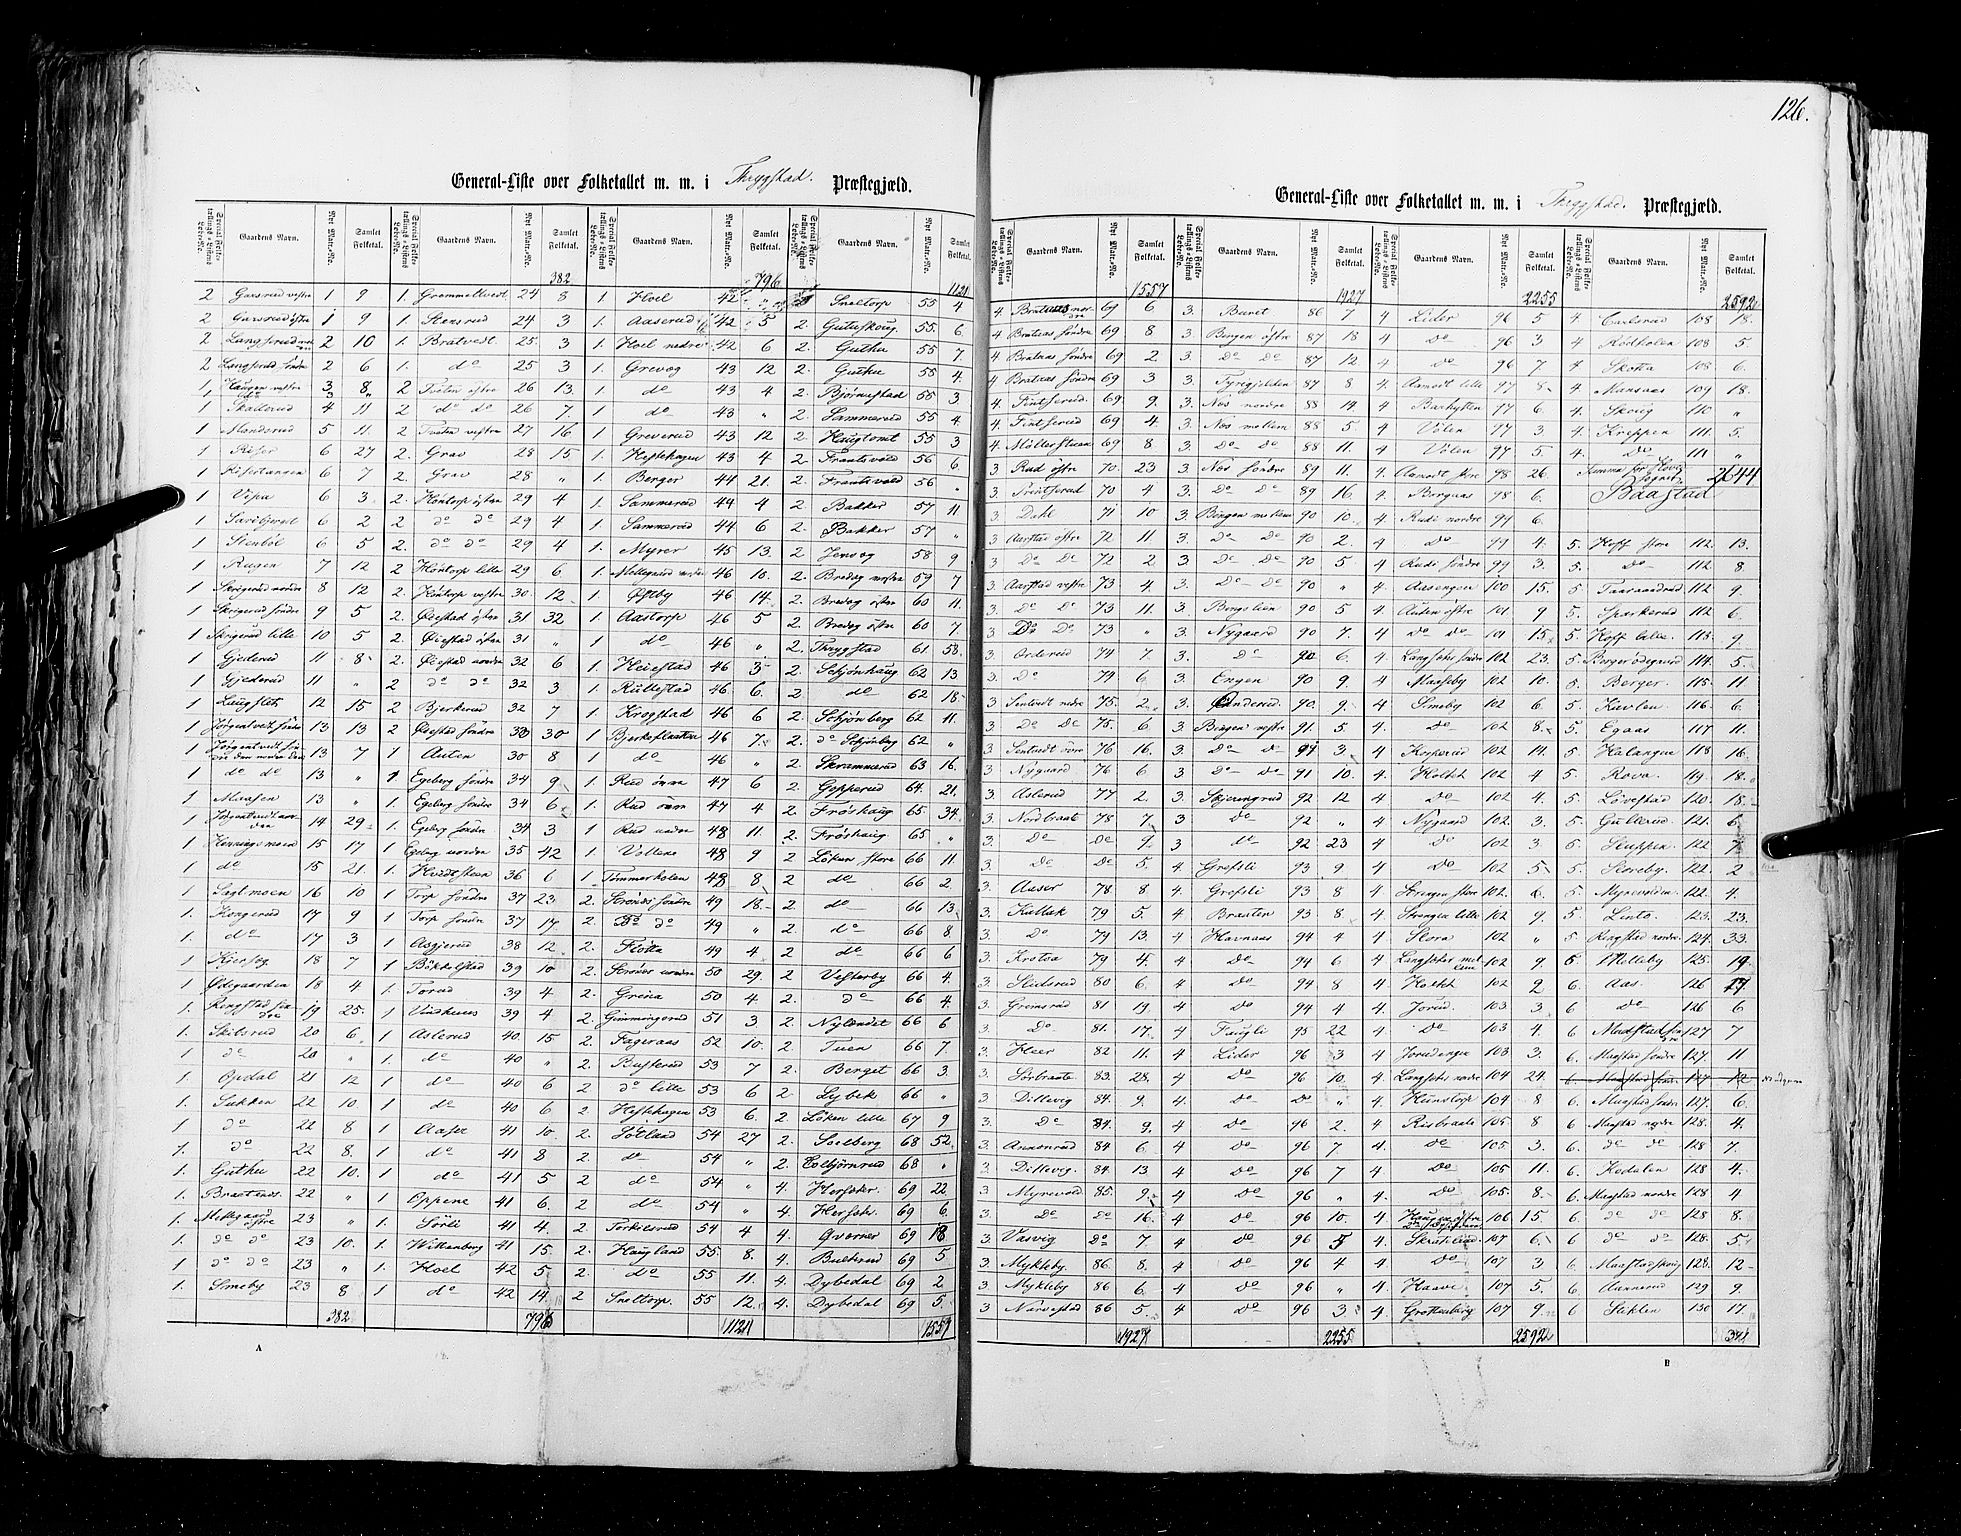 RA, Census 1855, vol. 1: Akershus amt, Smålenenes amt og Hedemarken amt, 1855, p. 126